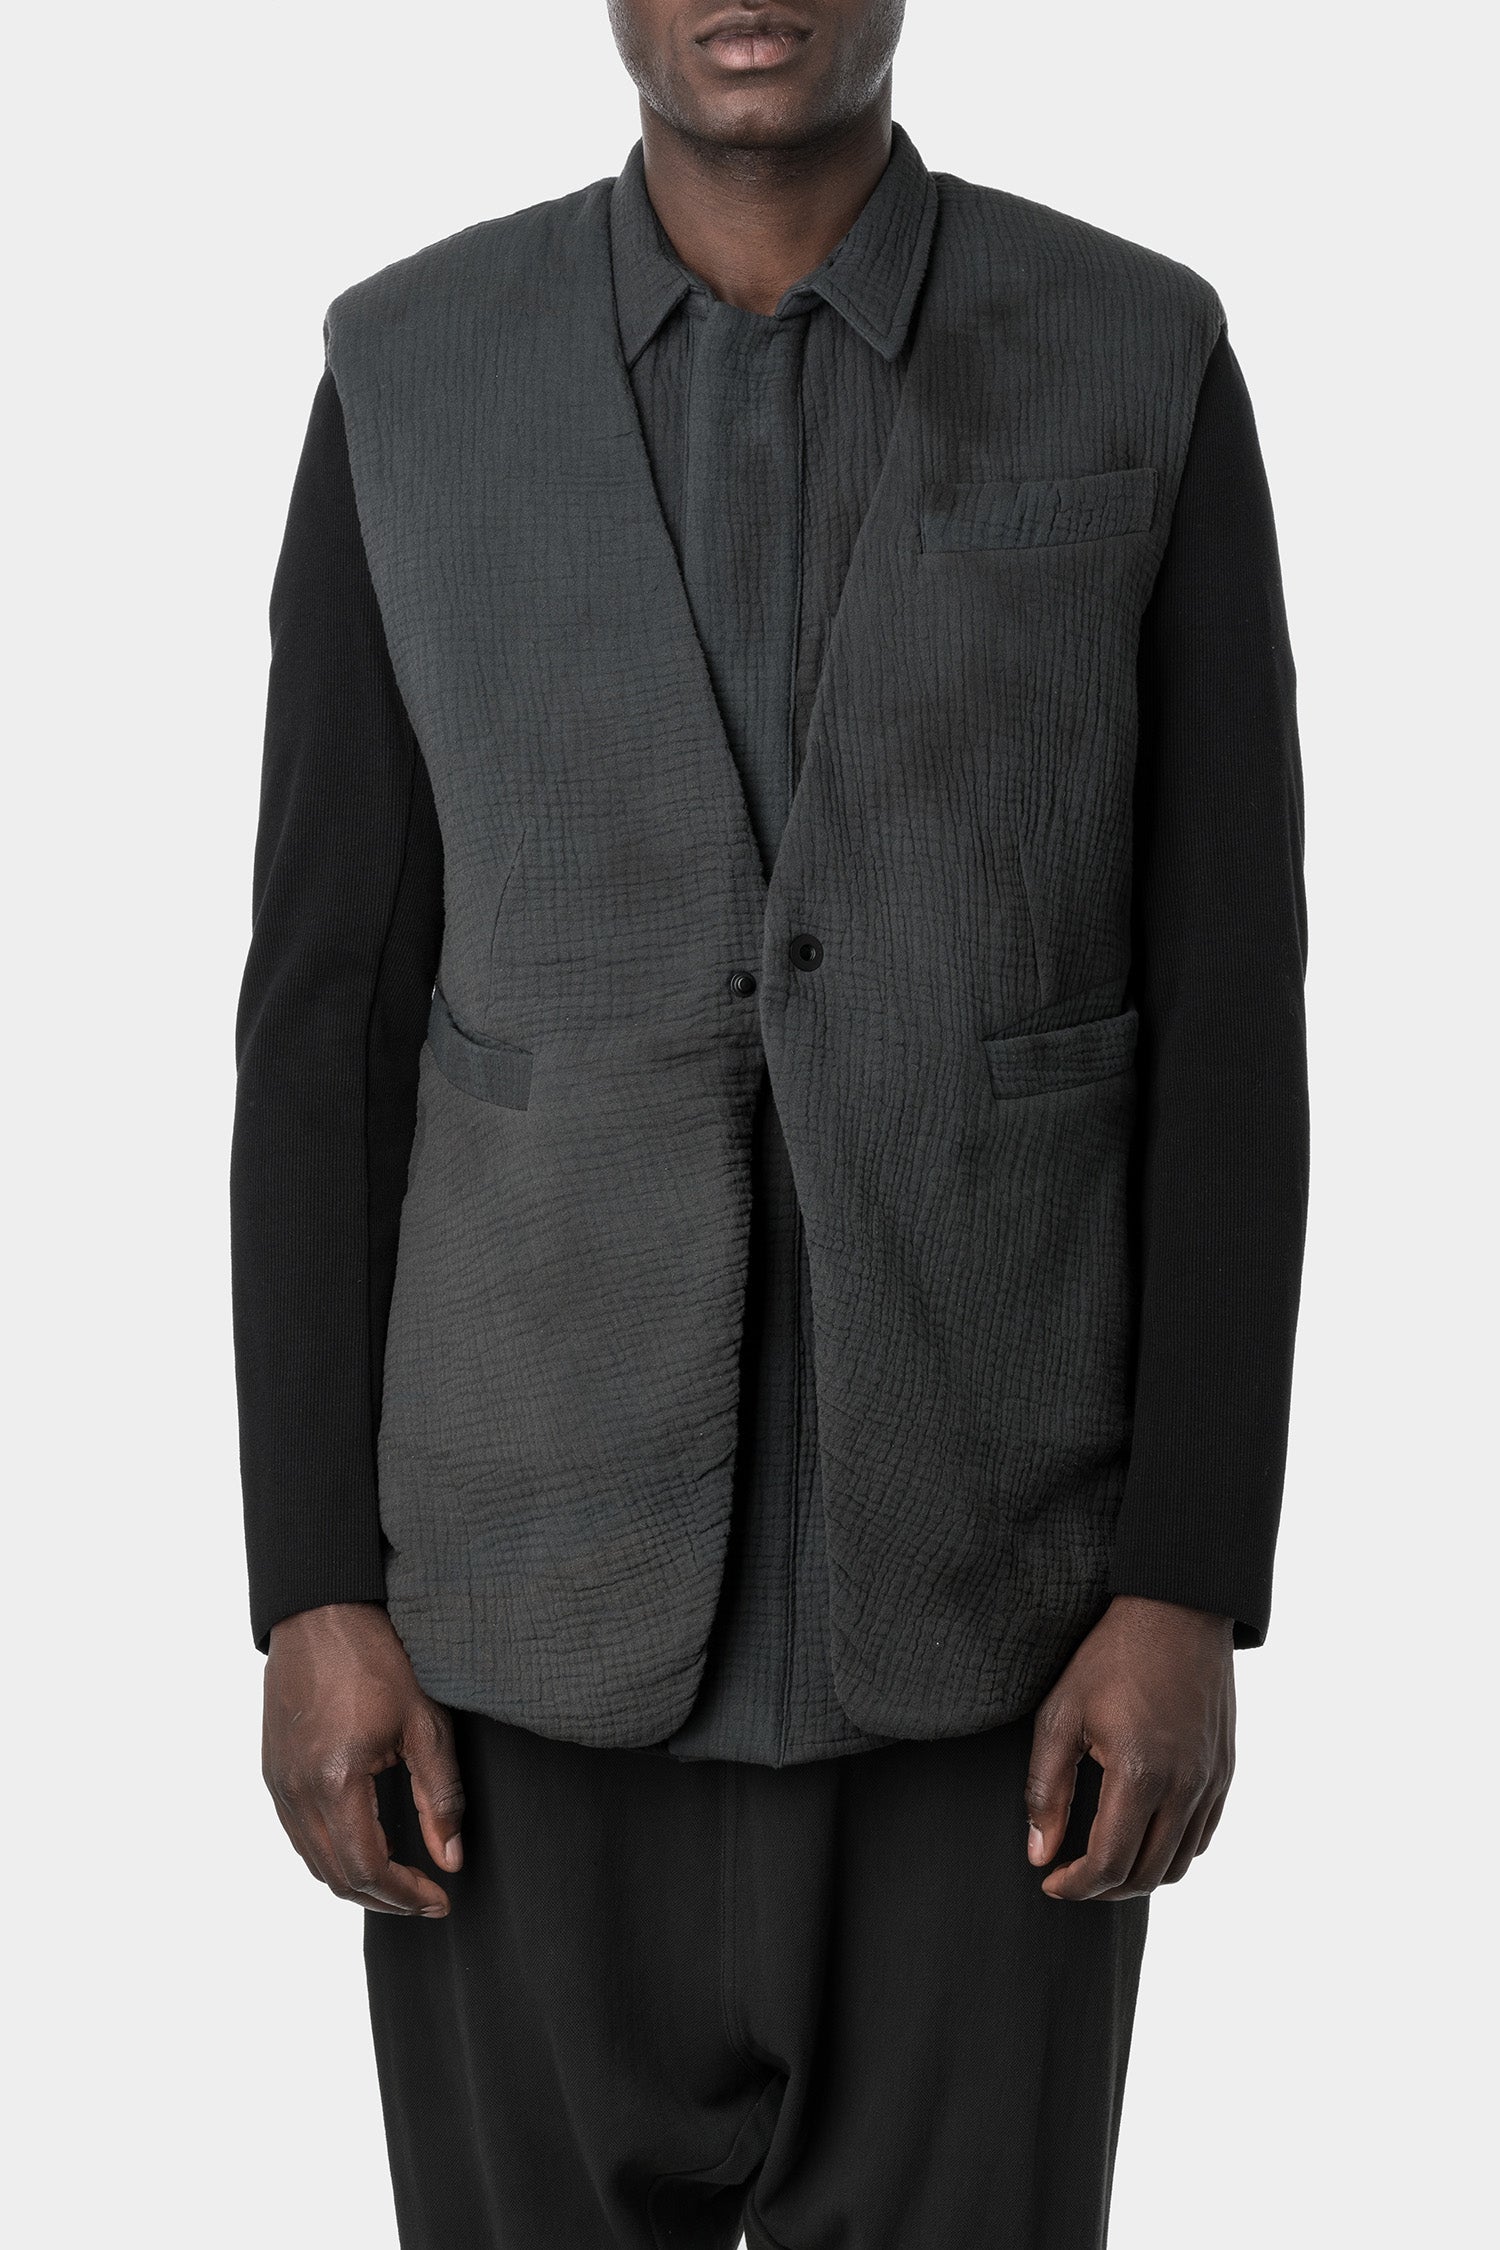 GALL | SS22 - Contrast sleeves blazer – ORIMONO.eu